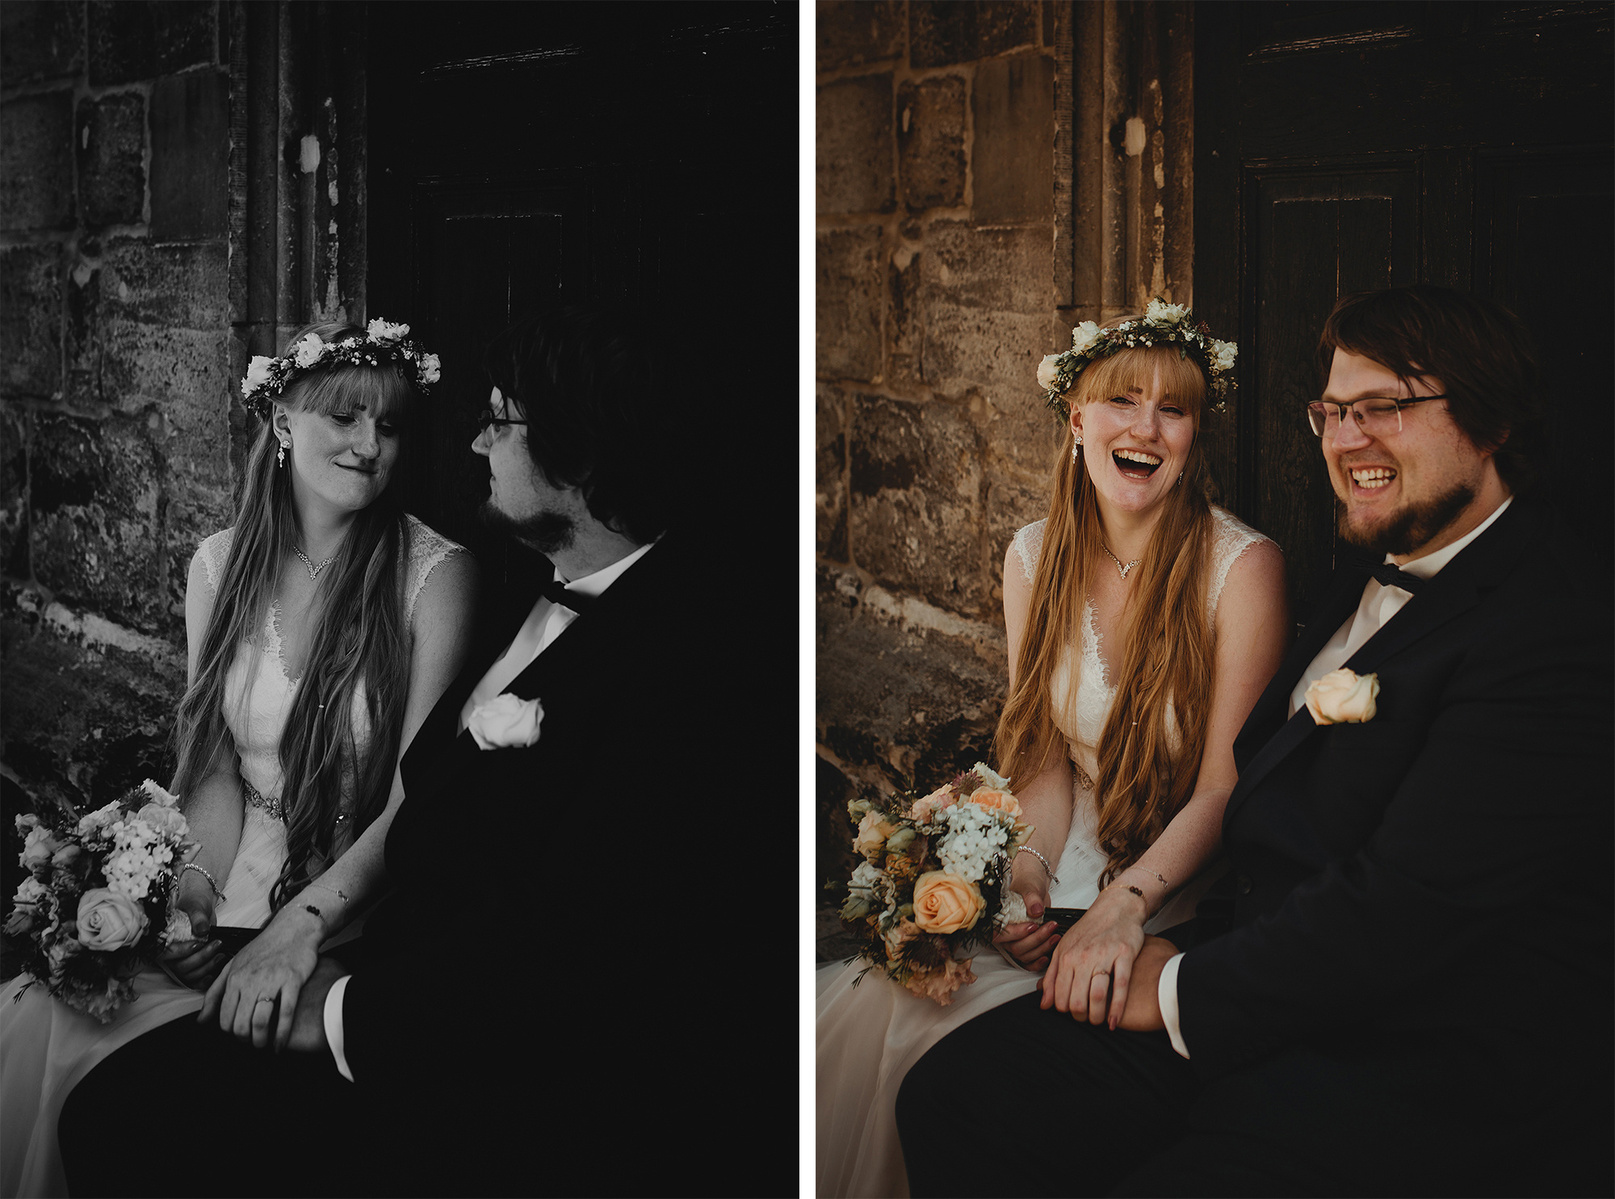 Ungestellte Hochzeitsfotos von einem lachenden Brautpaar nach der Trauung in Weißenfels.